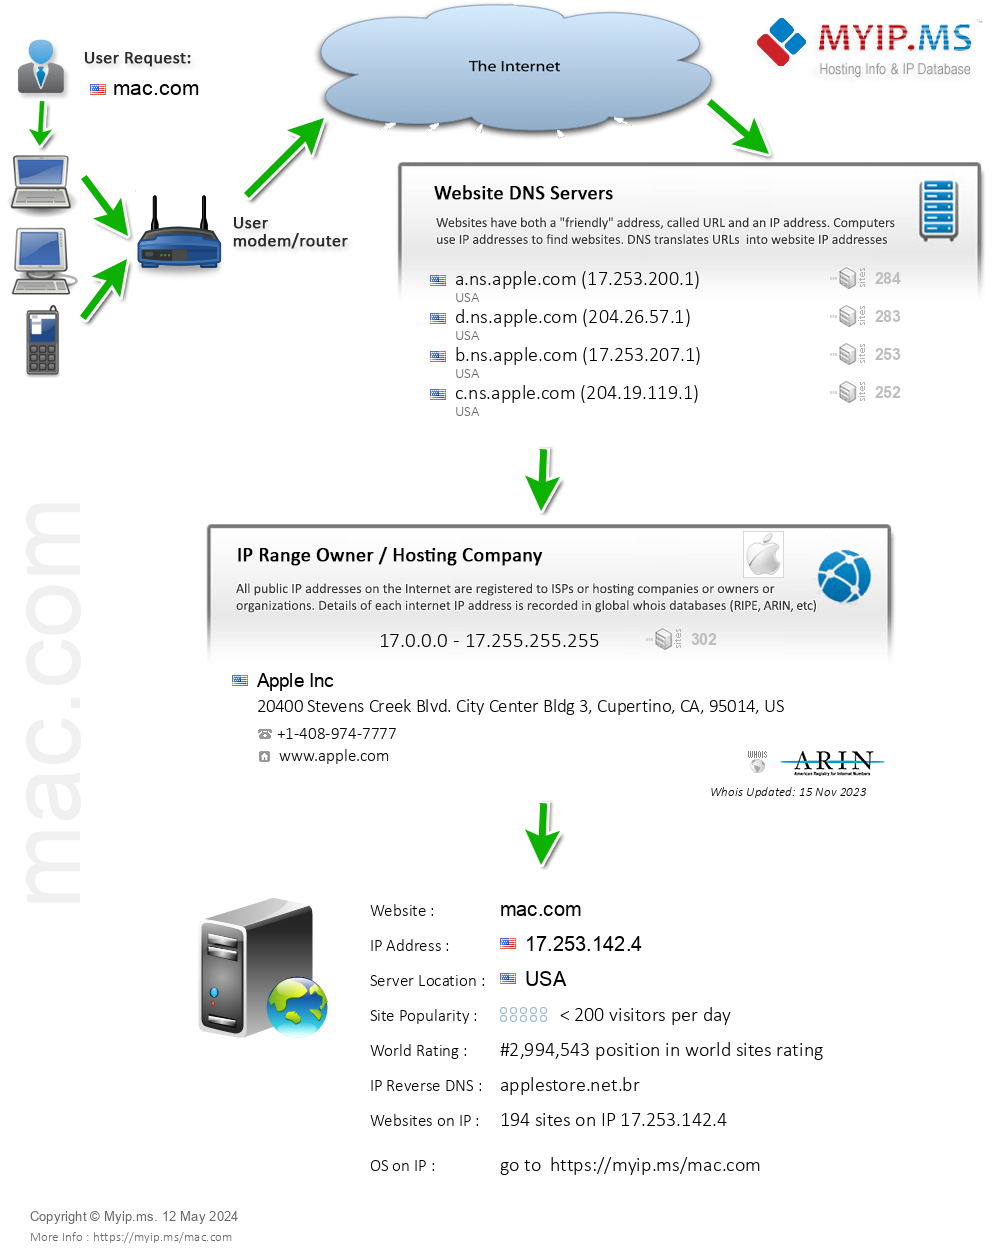 Mac.com - Website Hosting Visual IP Diagram